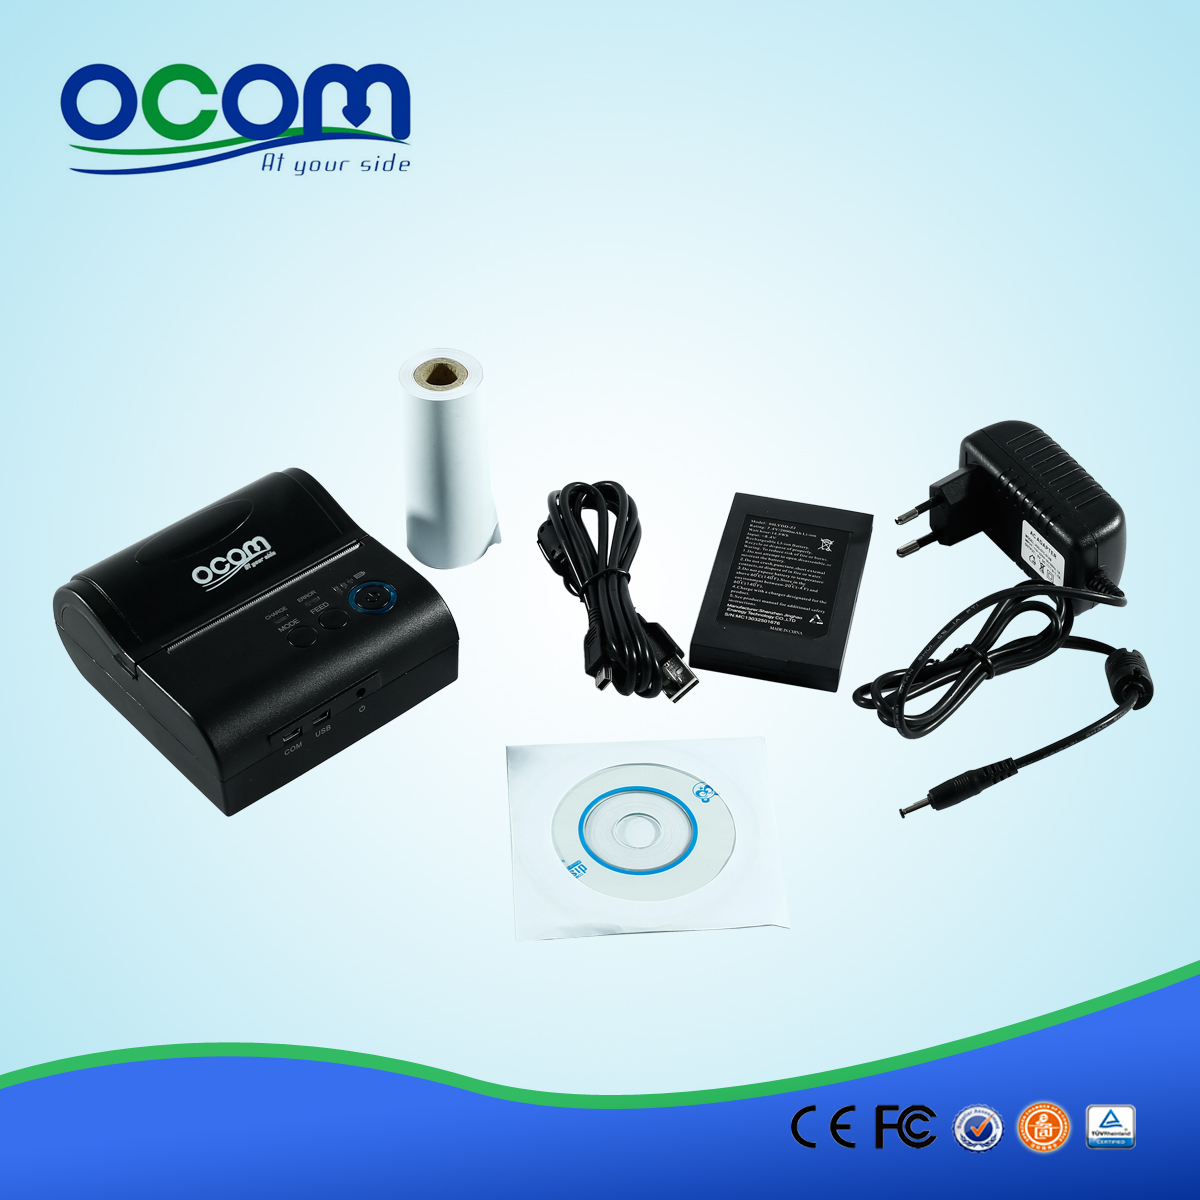 OCPP-M082: 80MM Bluetooth Printer Ondersteuning Android, Windows, Linux, Met SDK